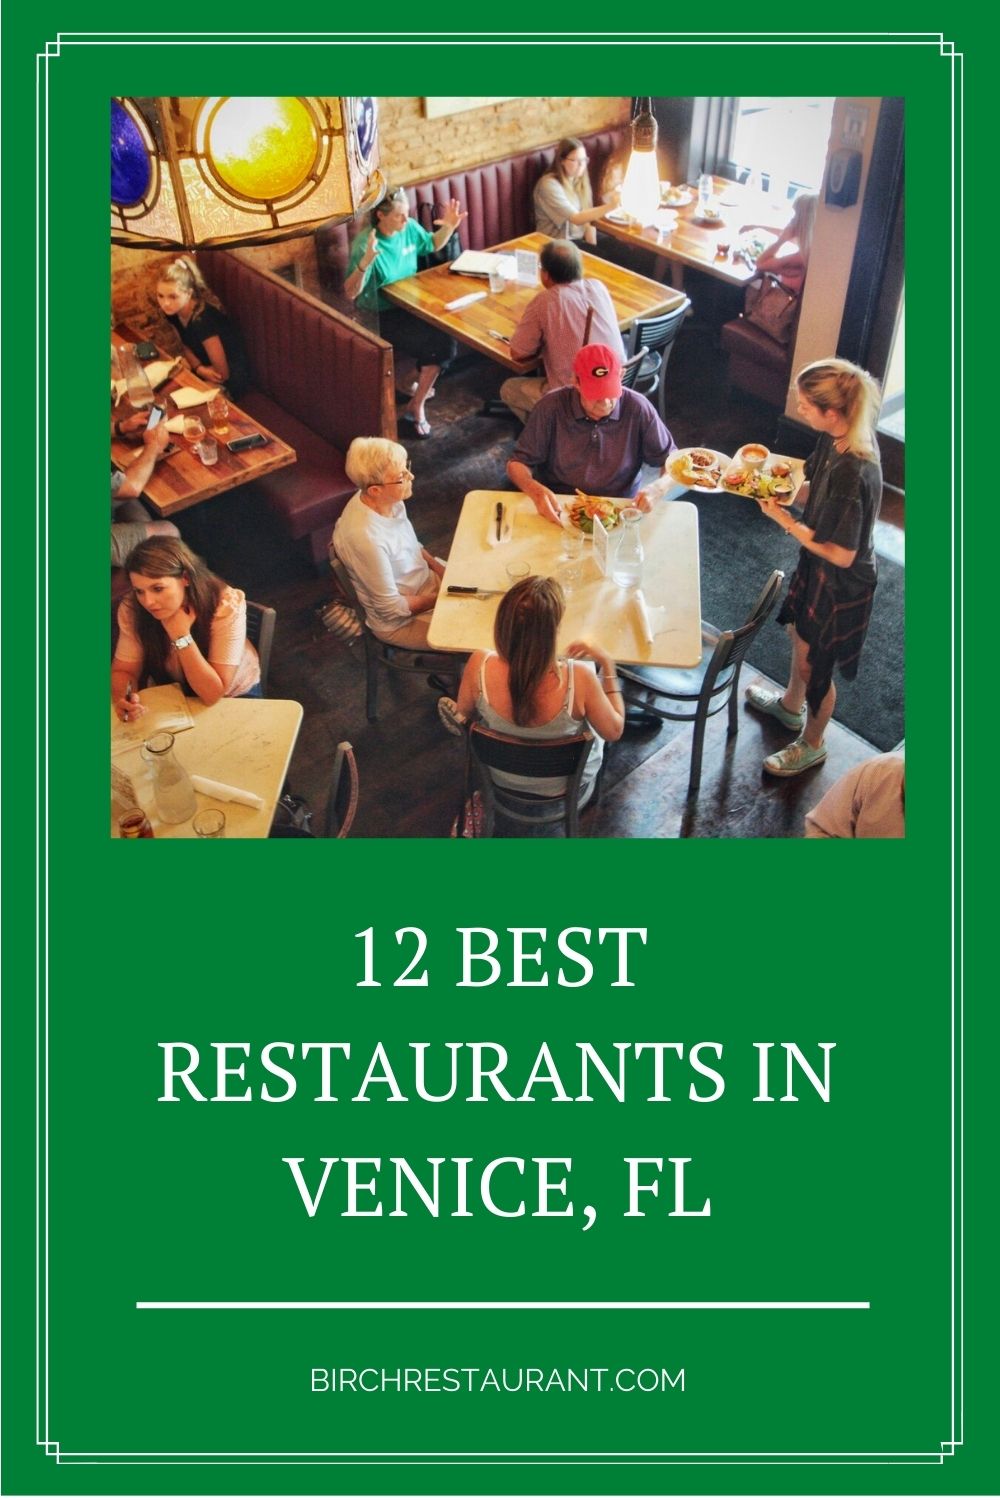 Best Restaurants in Venice